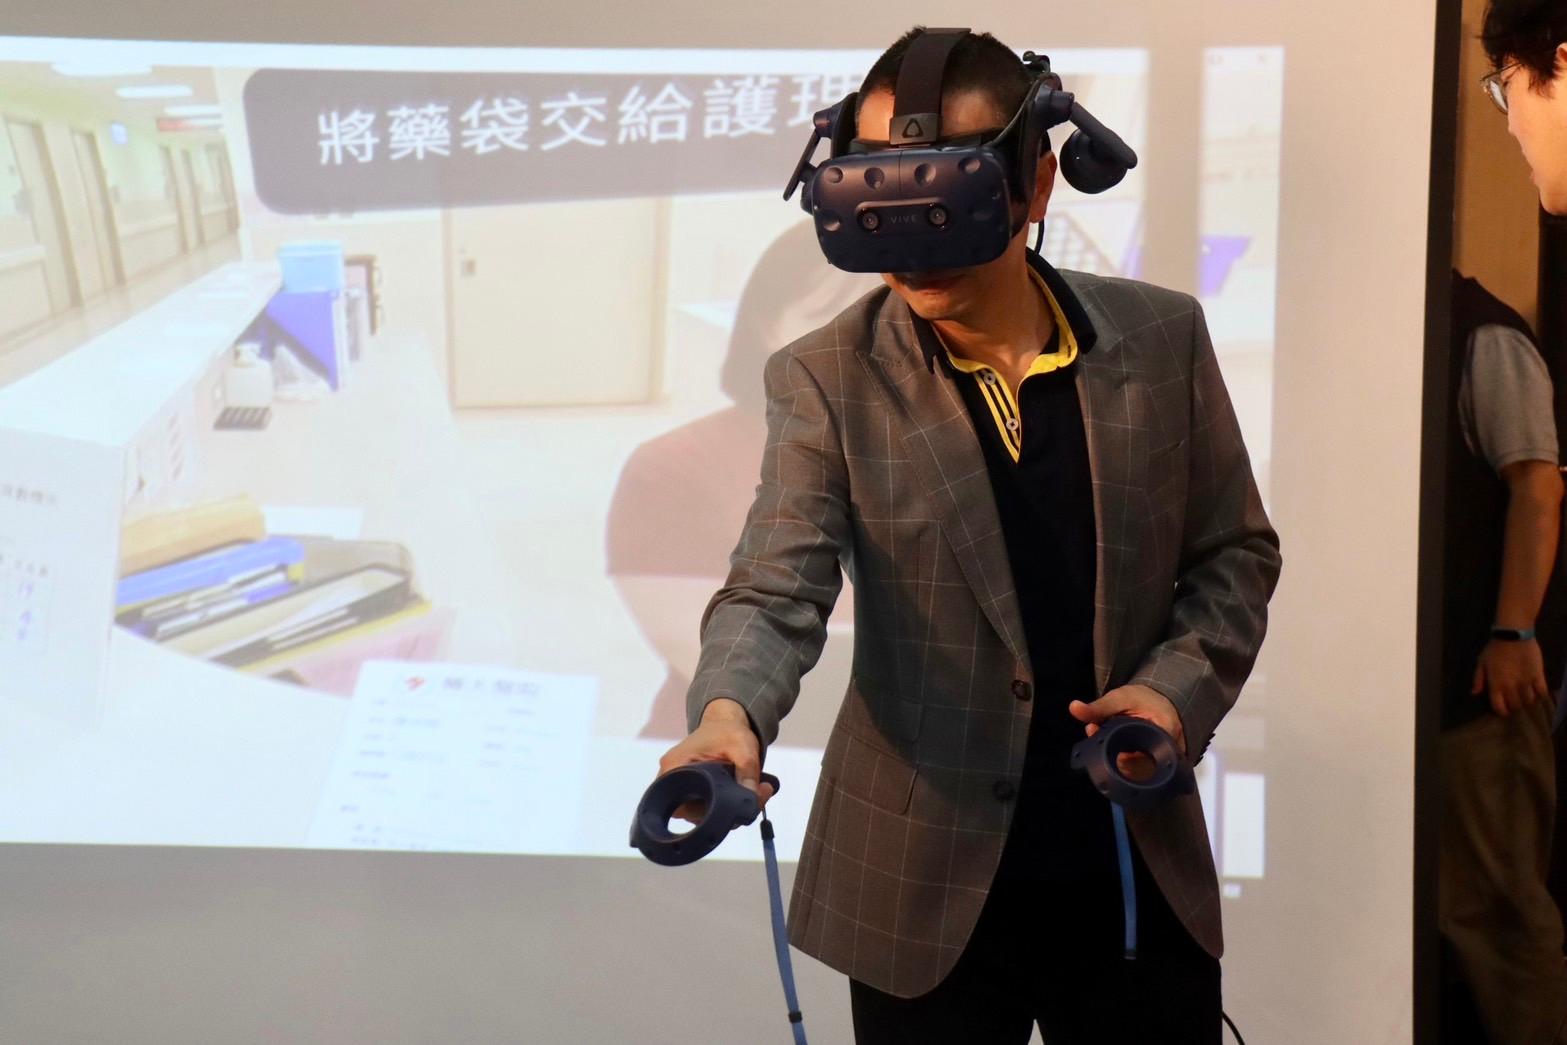 威務公司總經理林華成親自體驗VR醫院傳送員的工作